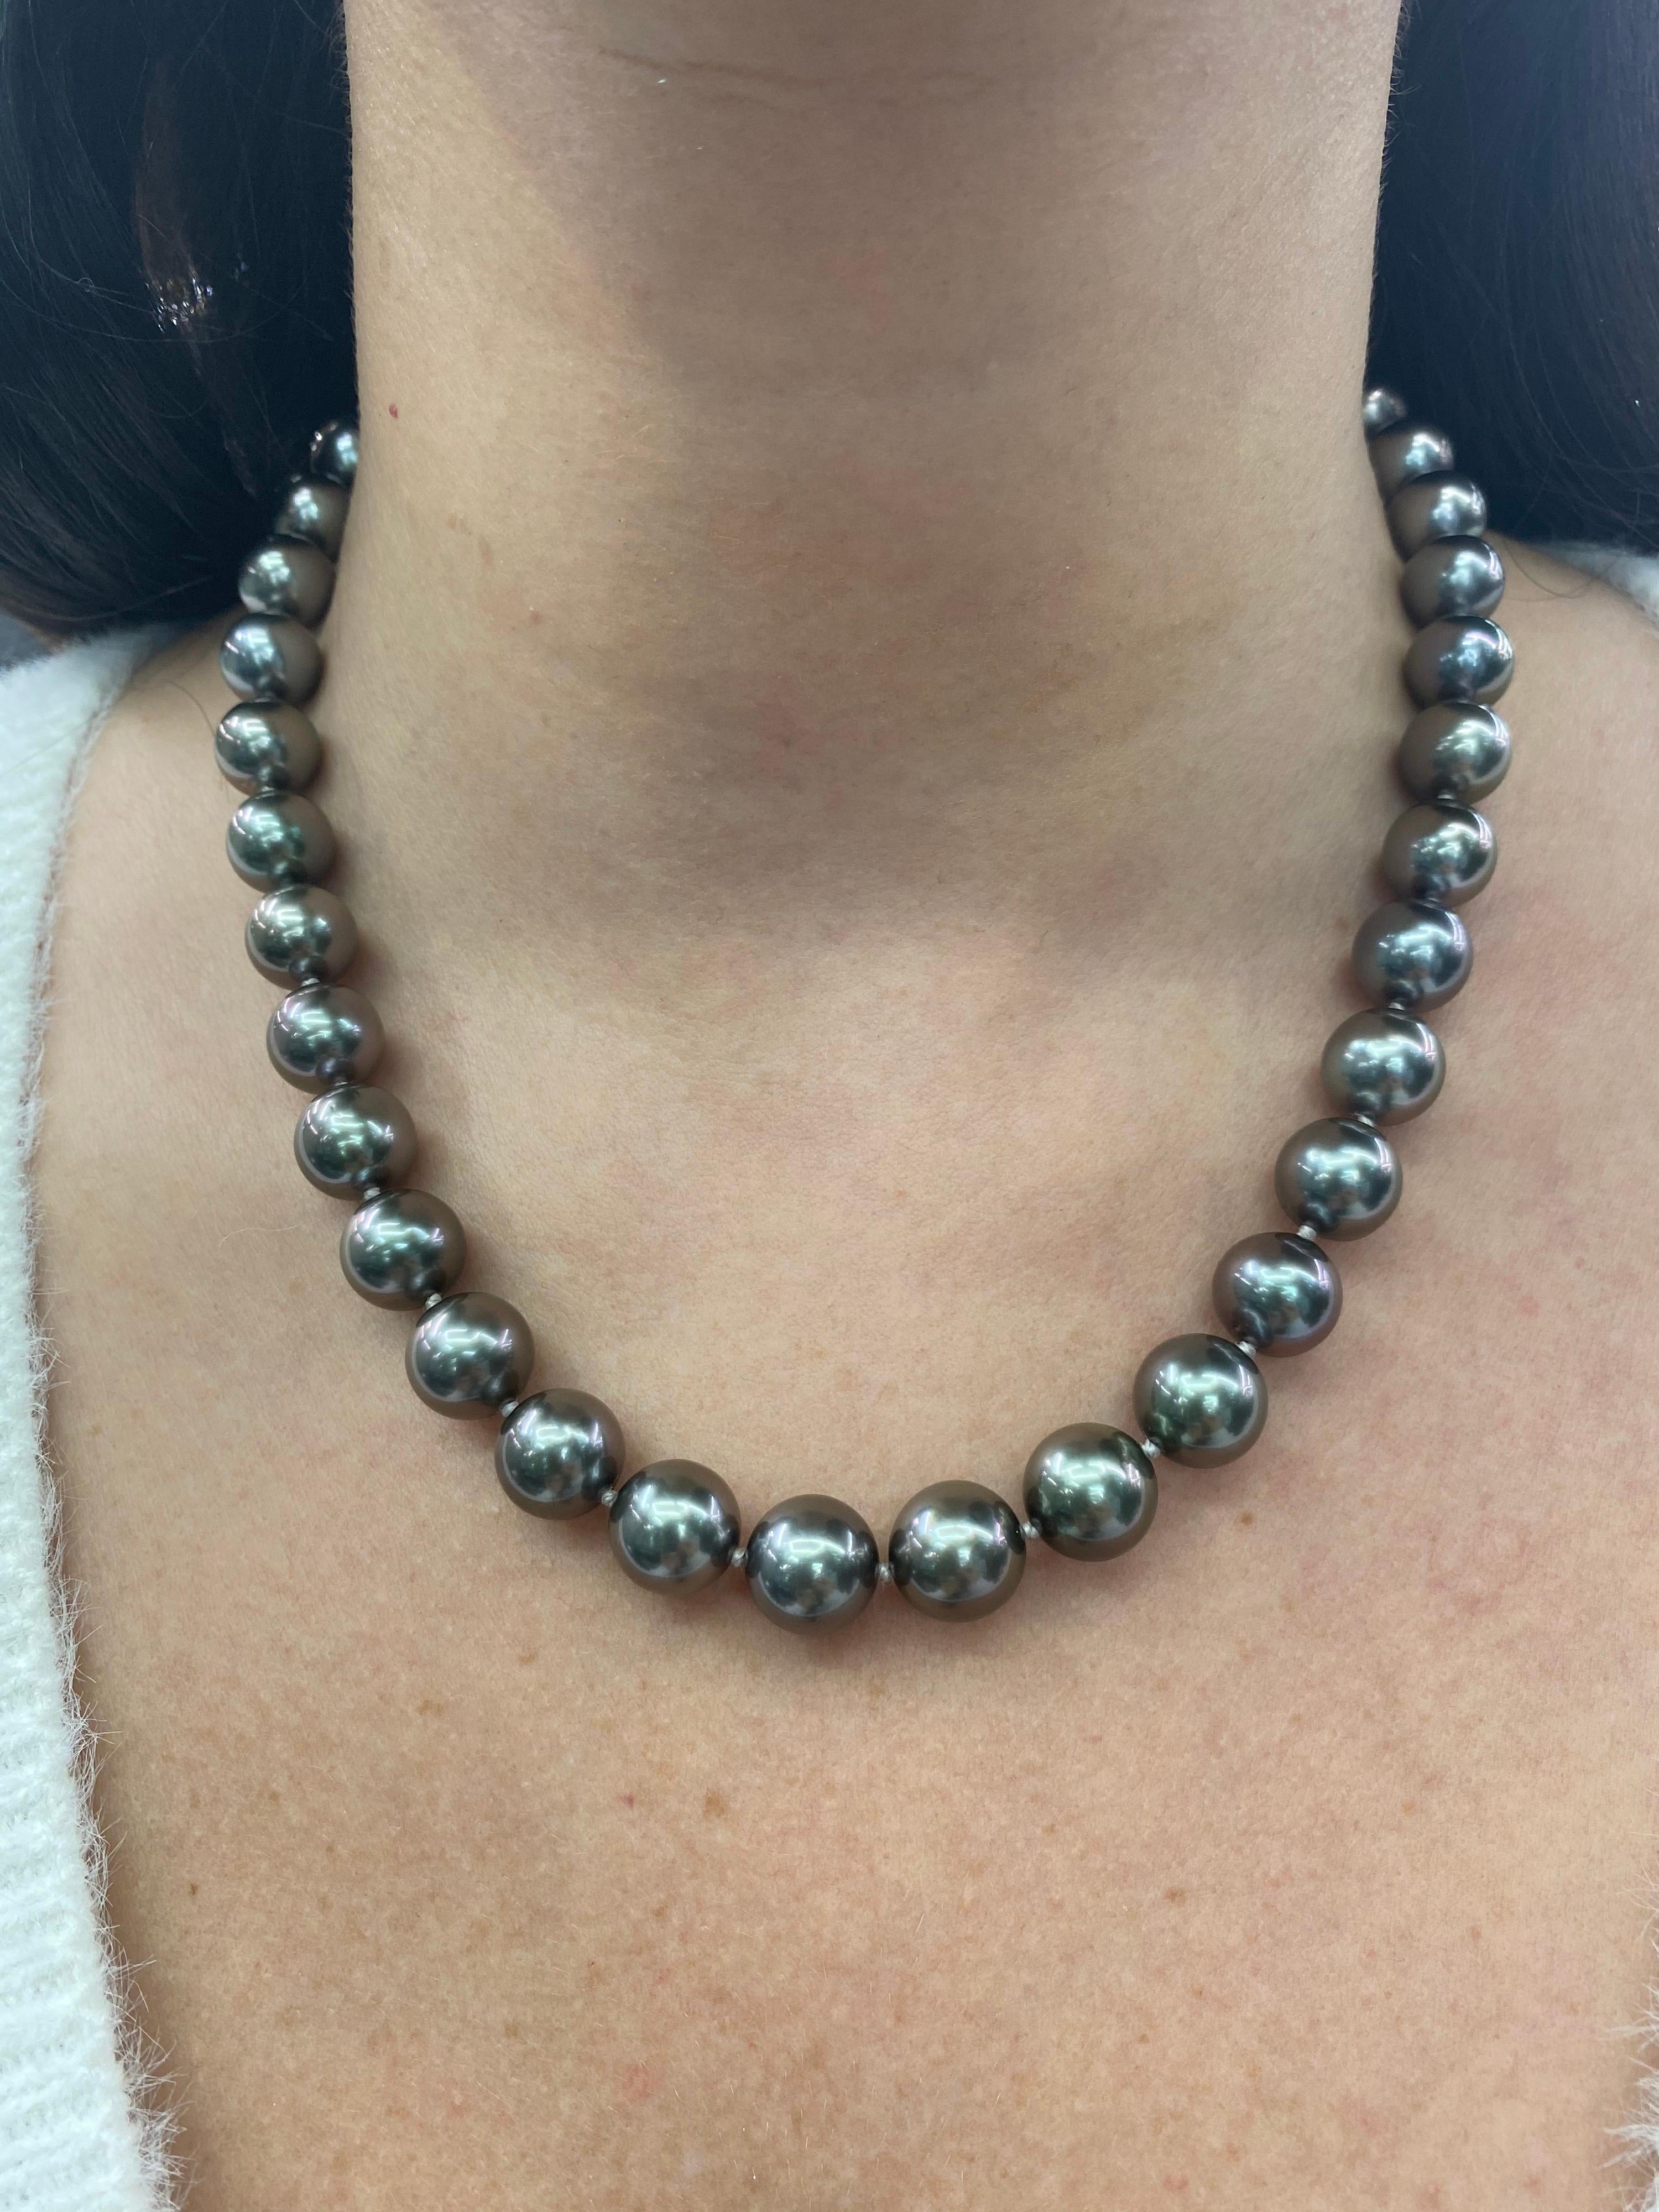 Perfekt abgestimmte Perlenkette mit 39 Tahiti-Perlen von 10-11,3 mm und einem hochglanzpolierten Kugelverschluss aus 14K Weißgold. 

Qualität der Perlen: AAA
Perlglanz: AAA Ausgezeichnet
Perlmutt : Sehr dick

Der Strang kann auf Bestellung gekürzt